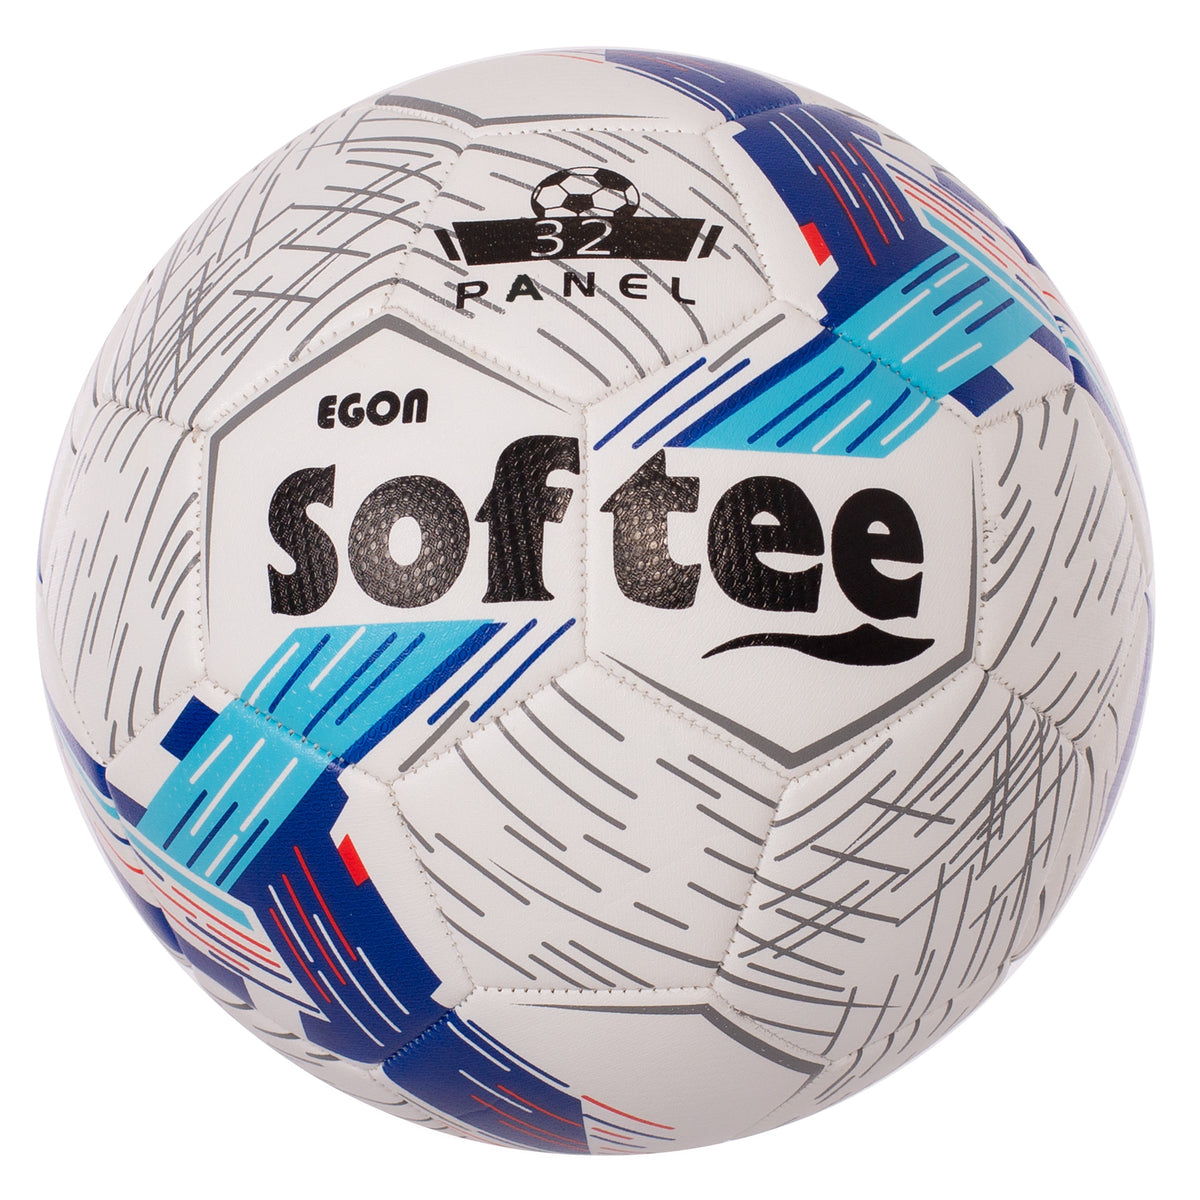 Balón Softee Egon -Uso Recreacional-